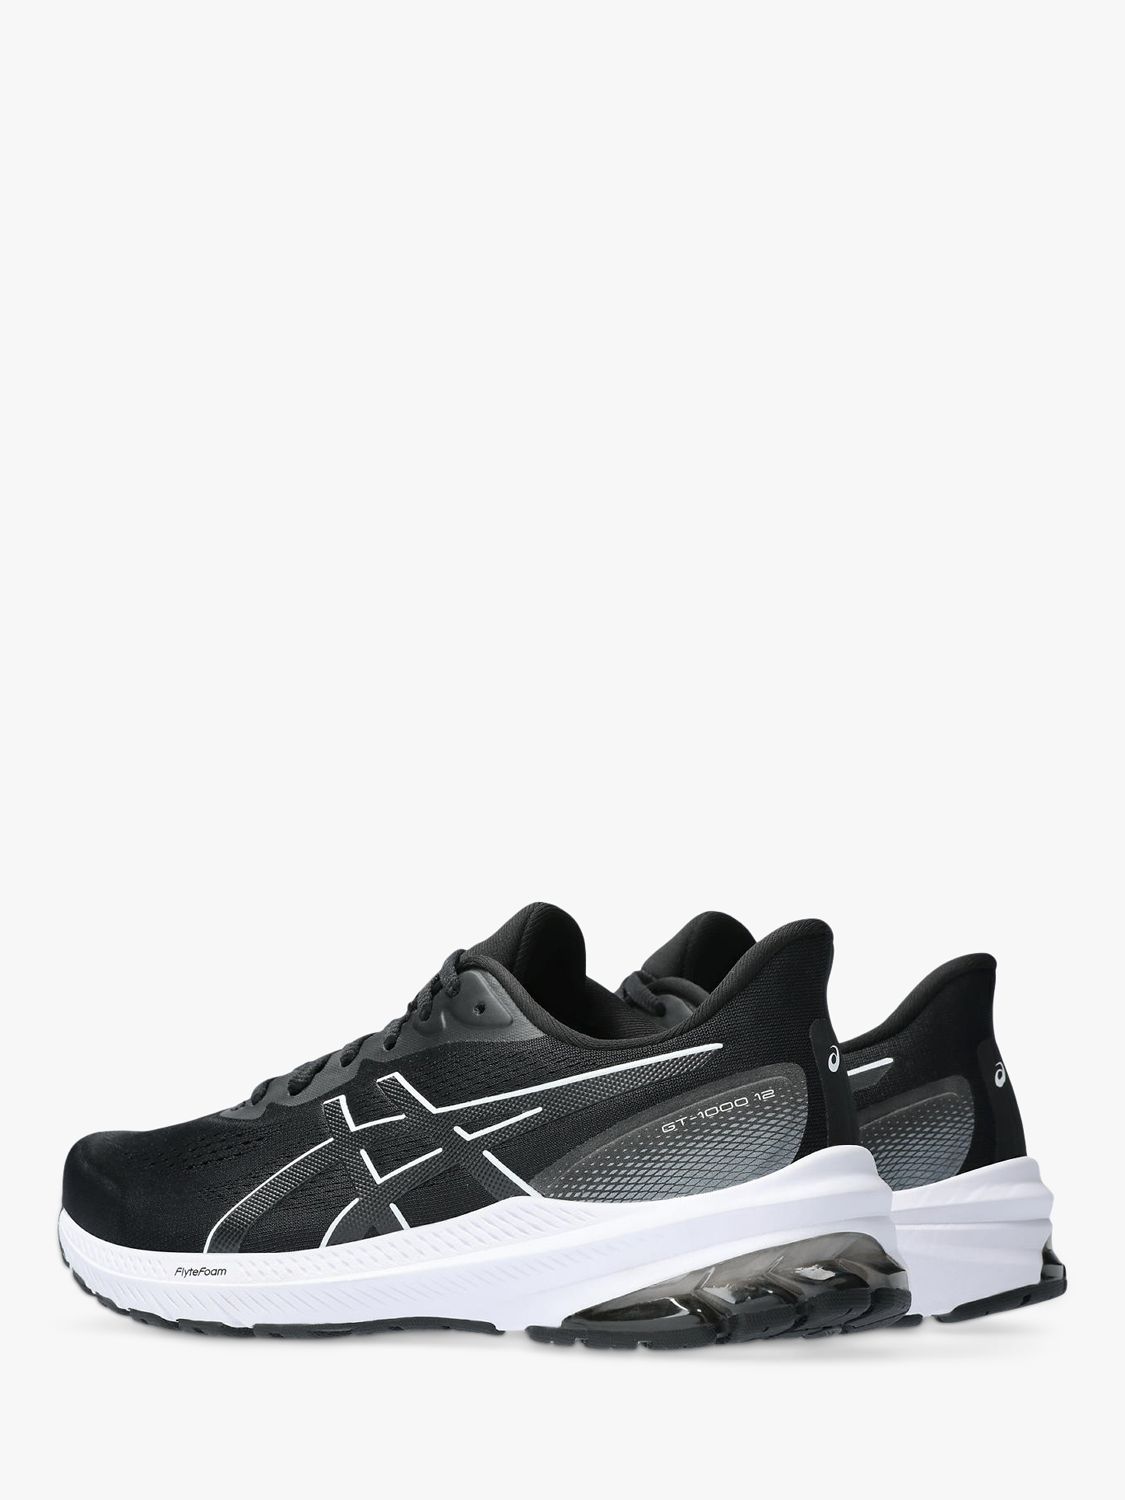 ASICS GT-1000 12 Women's Running Shoes, Black/White, 5.5